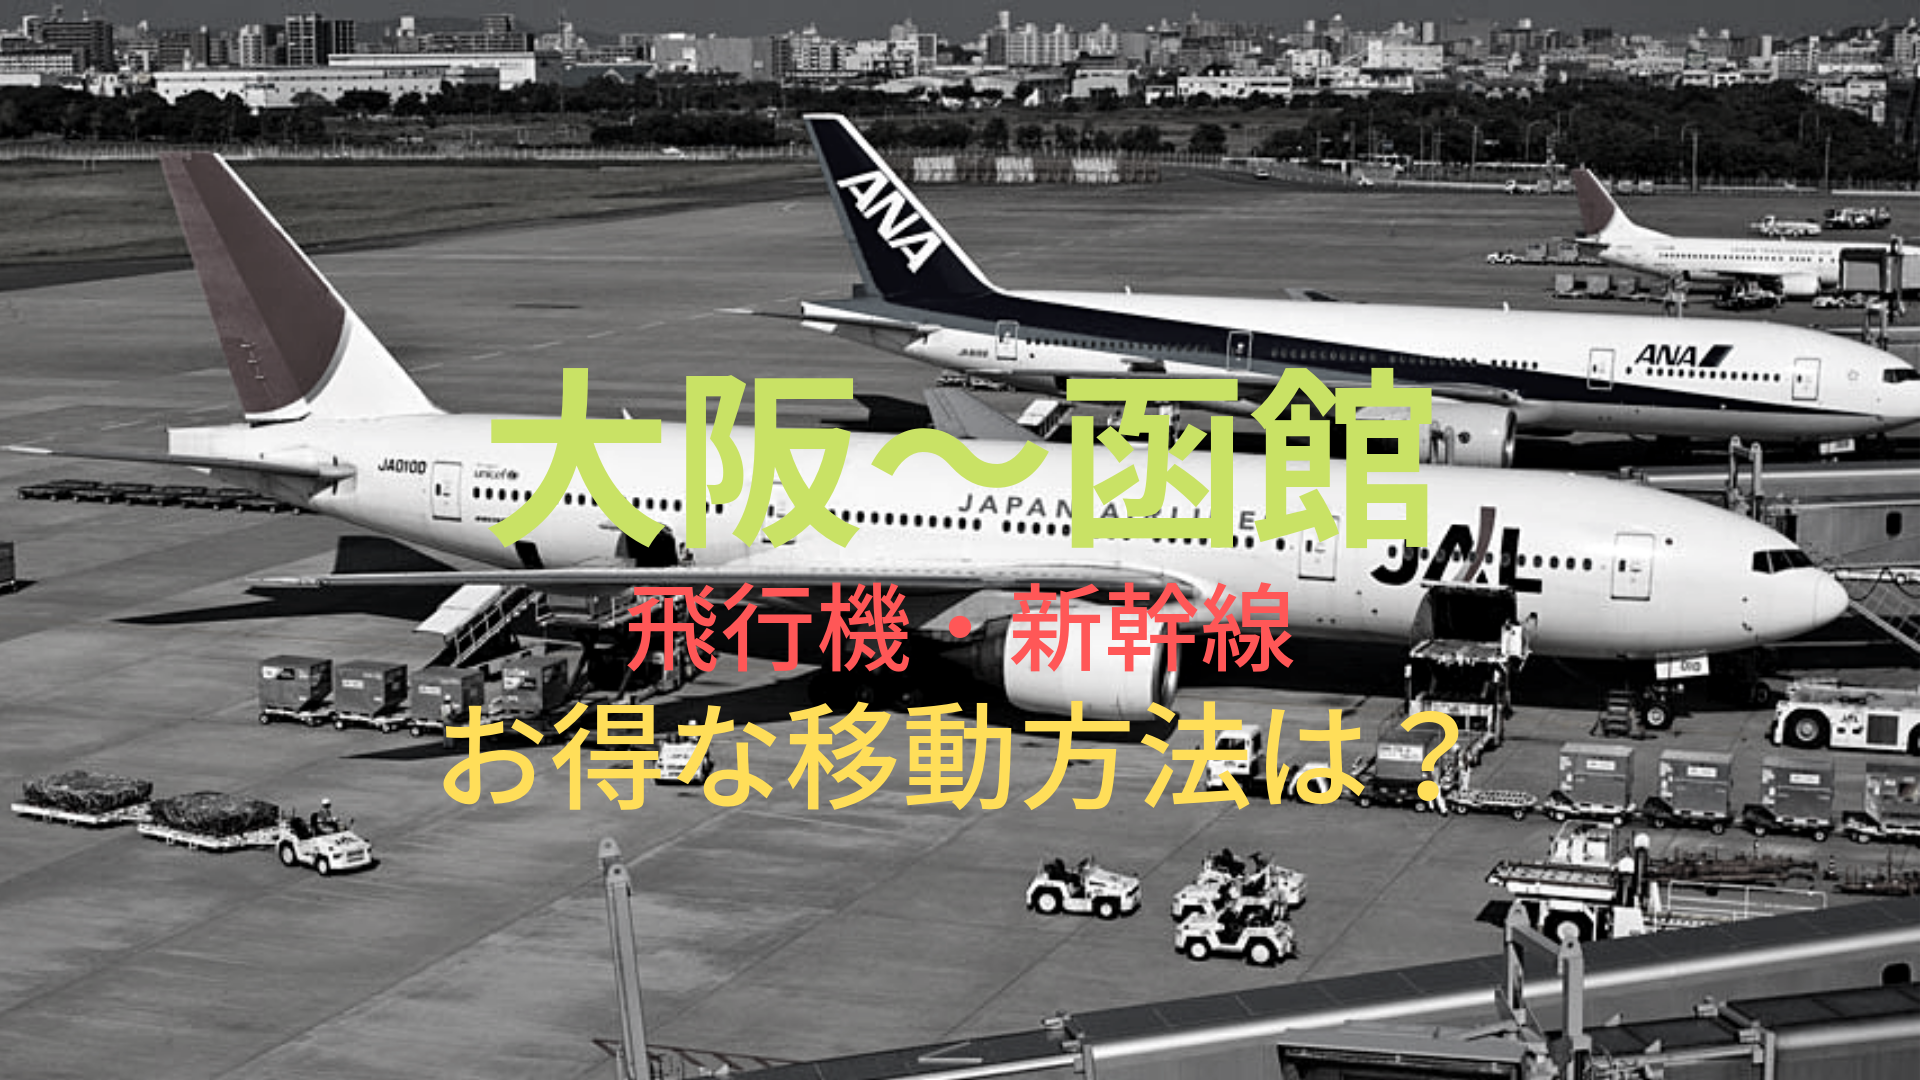 大阪 函館 円 格安で移動する方法は 飛行機 新幹線をそれぞれ比較 ばしたく交通